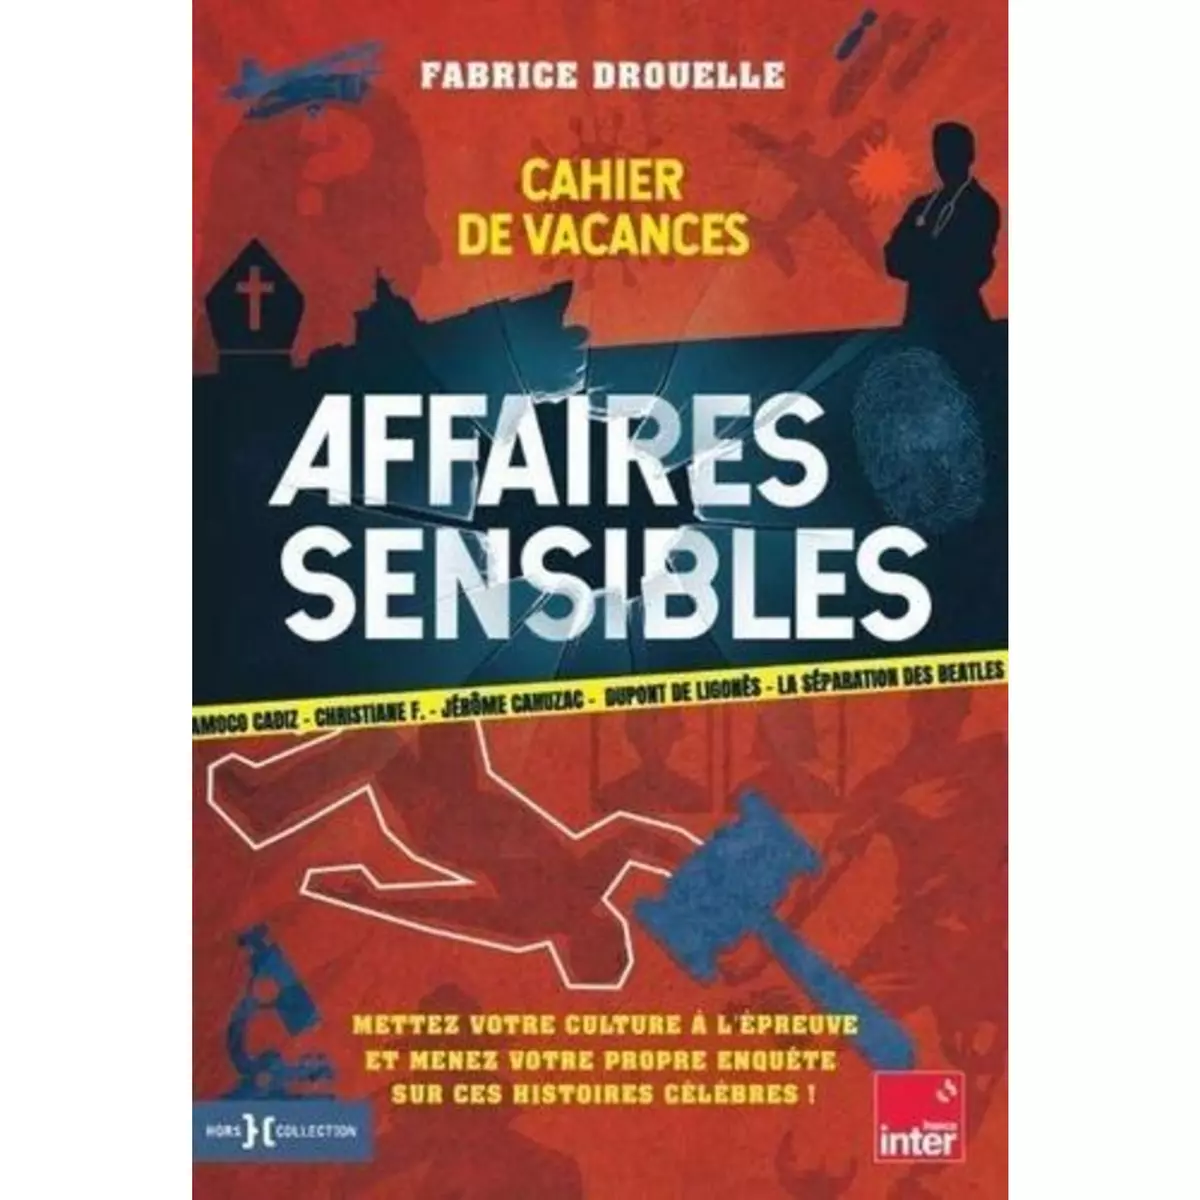  CAHIER DE VACANCES - AFFAIRES SENSIBLES, Drouelle Fabrice